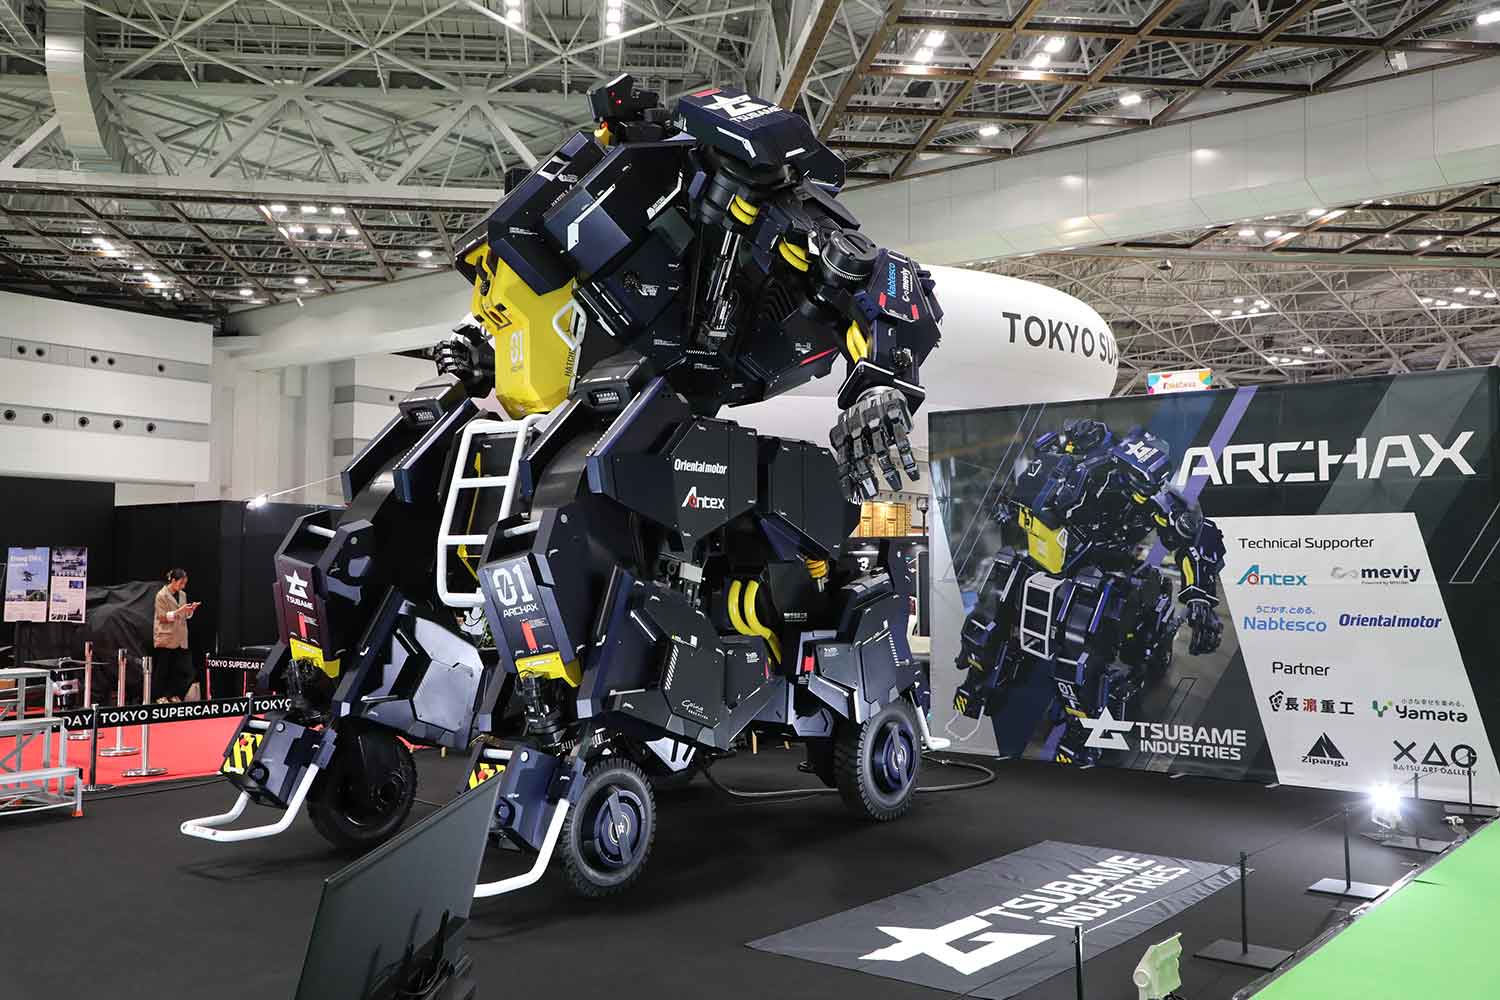 ツバメインダストリ株式会社が開発した搭乗操作型ロボット「ARCHAX（アーカックス）」